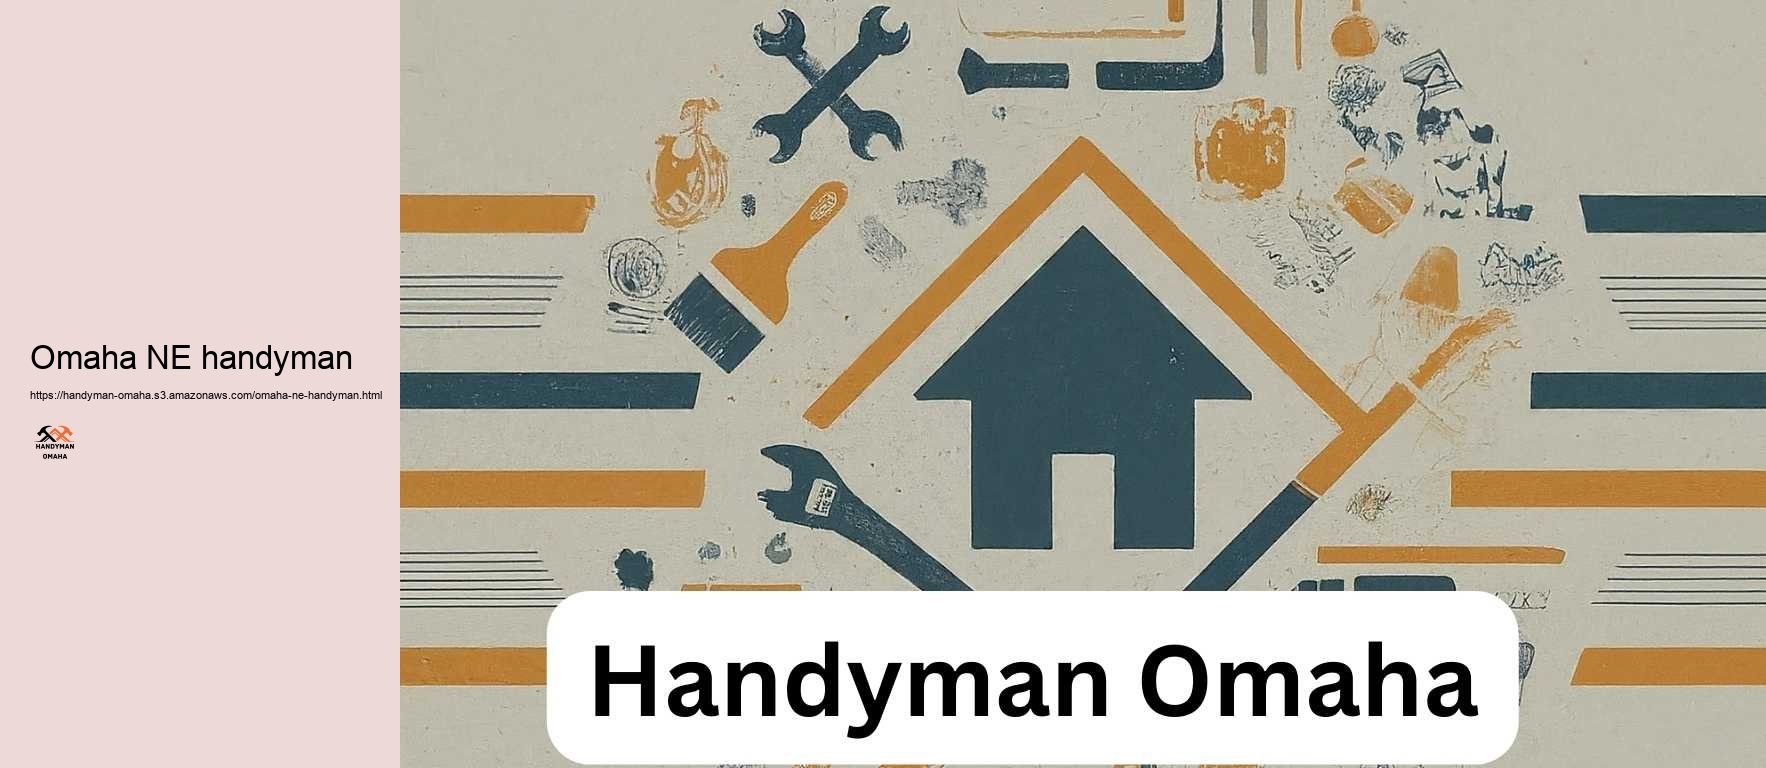 Omaha NE handyman